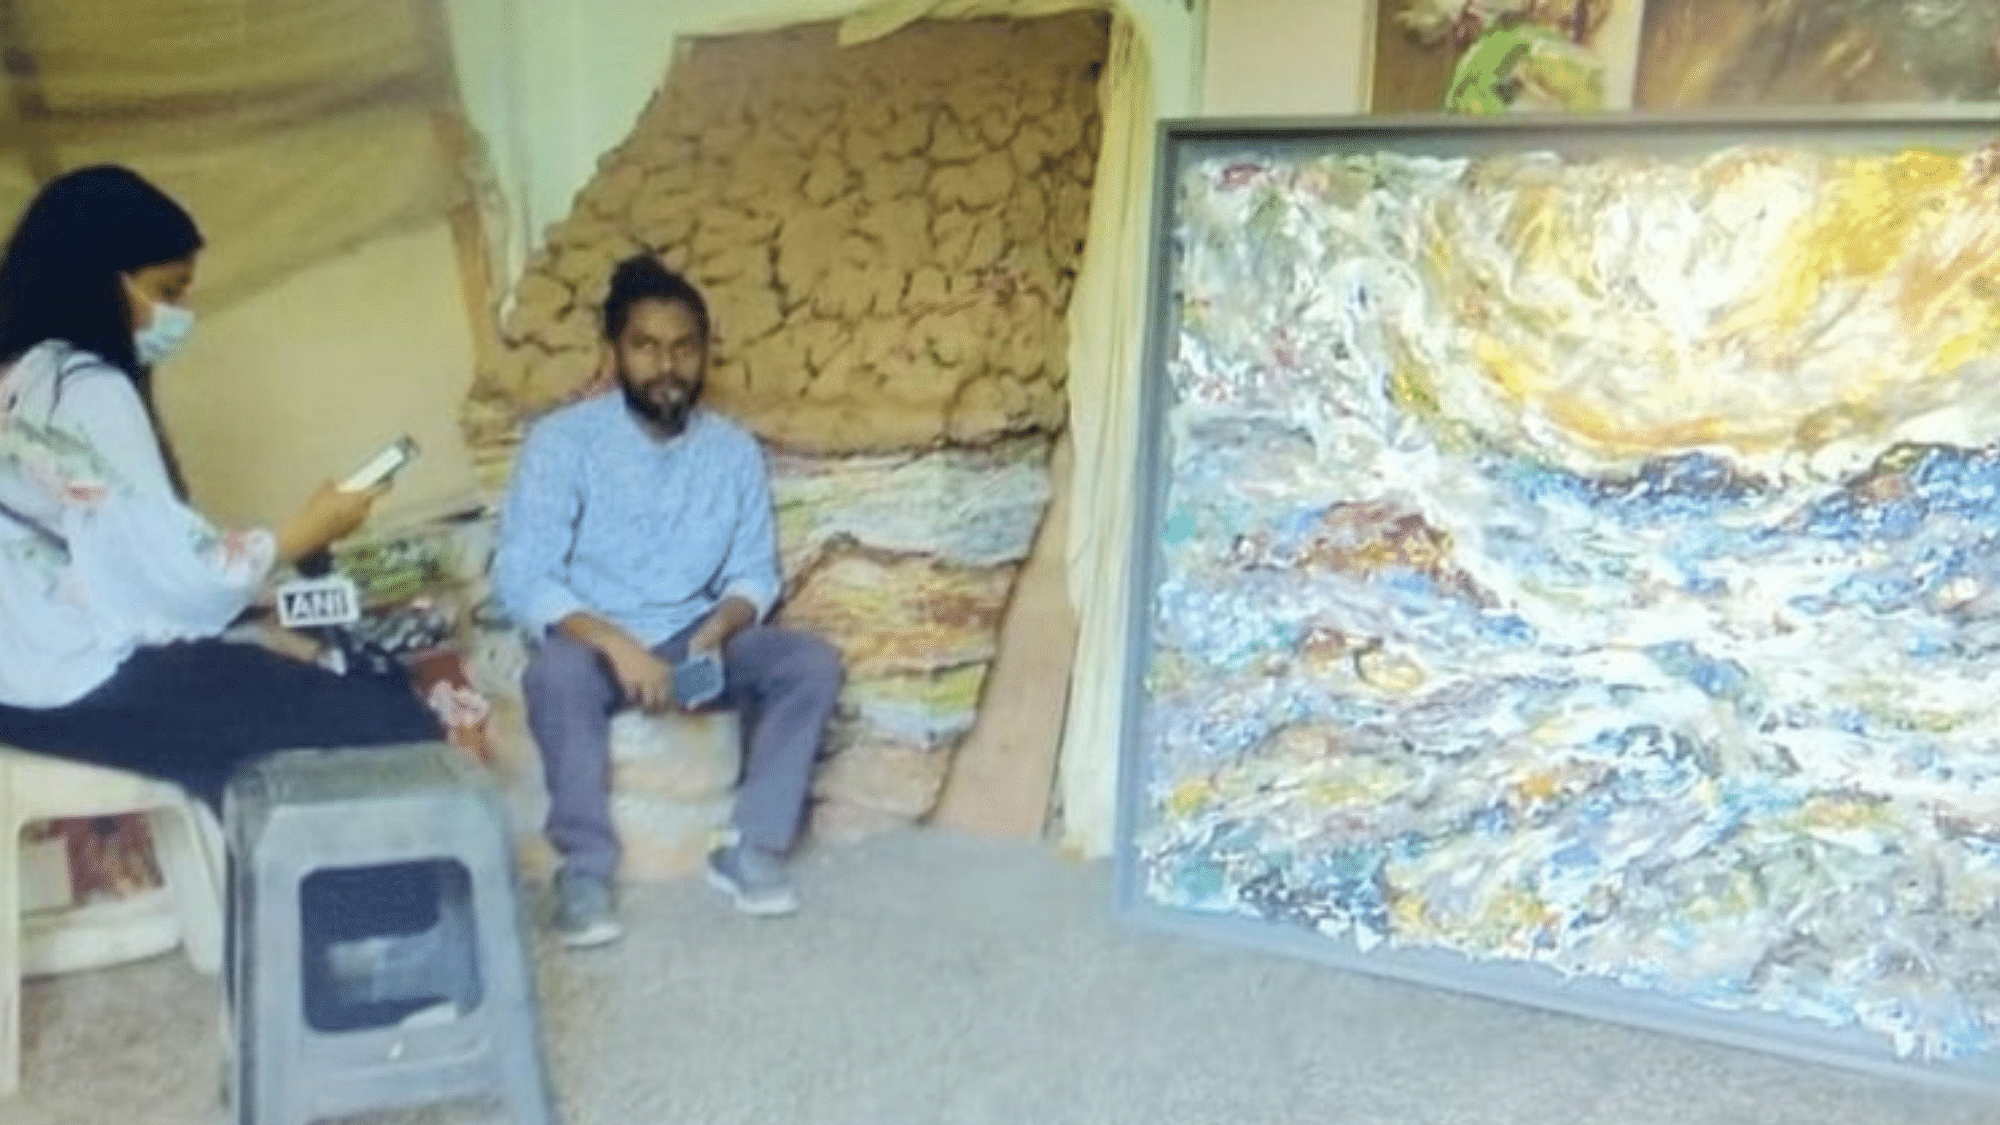 <div class="paragraphs"><p>Artist Manveer Singh transforms 250 kg plastic waste into art</p></div>